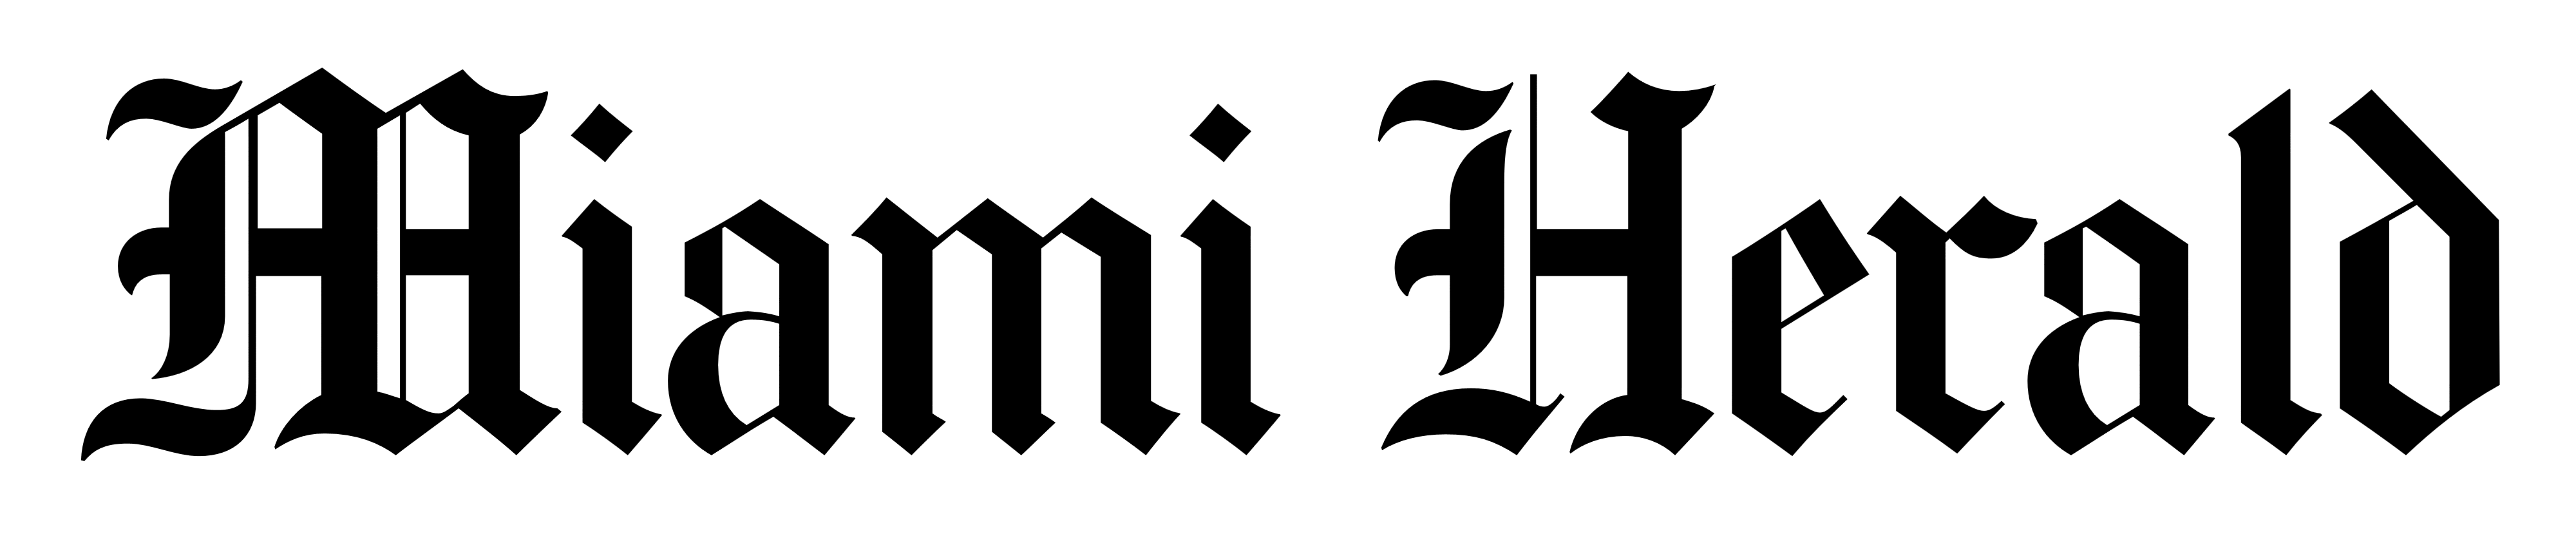 Miami Herald logo, logotype